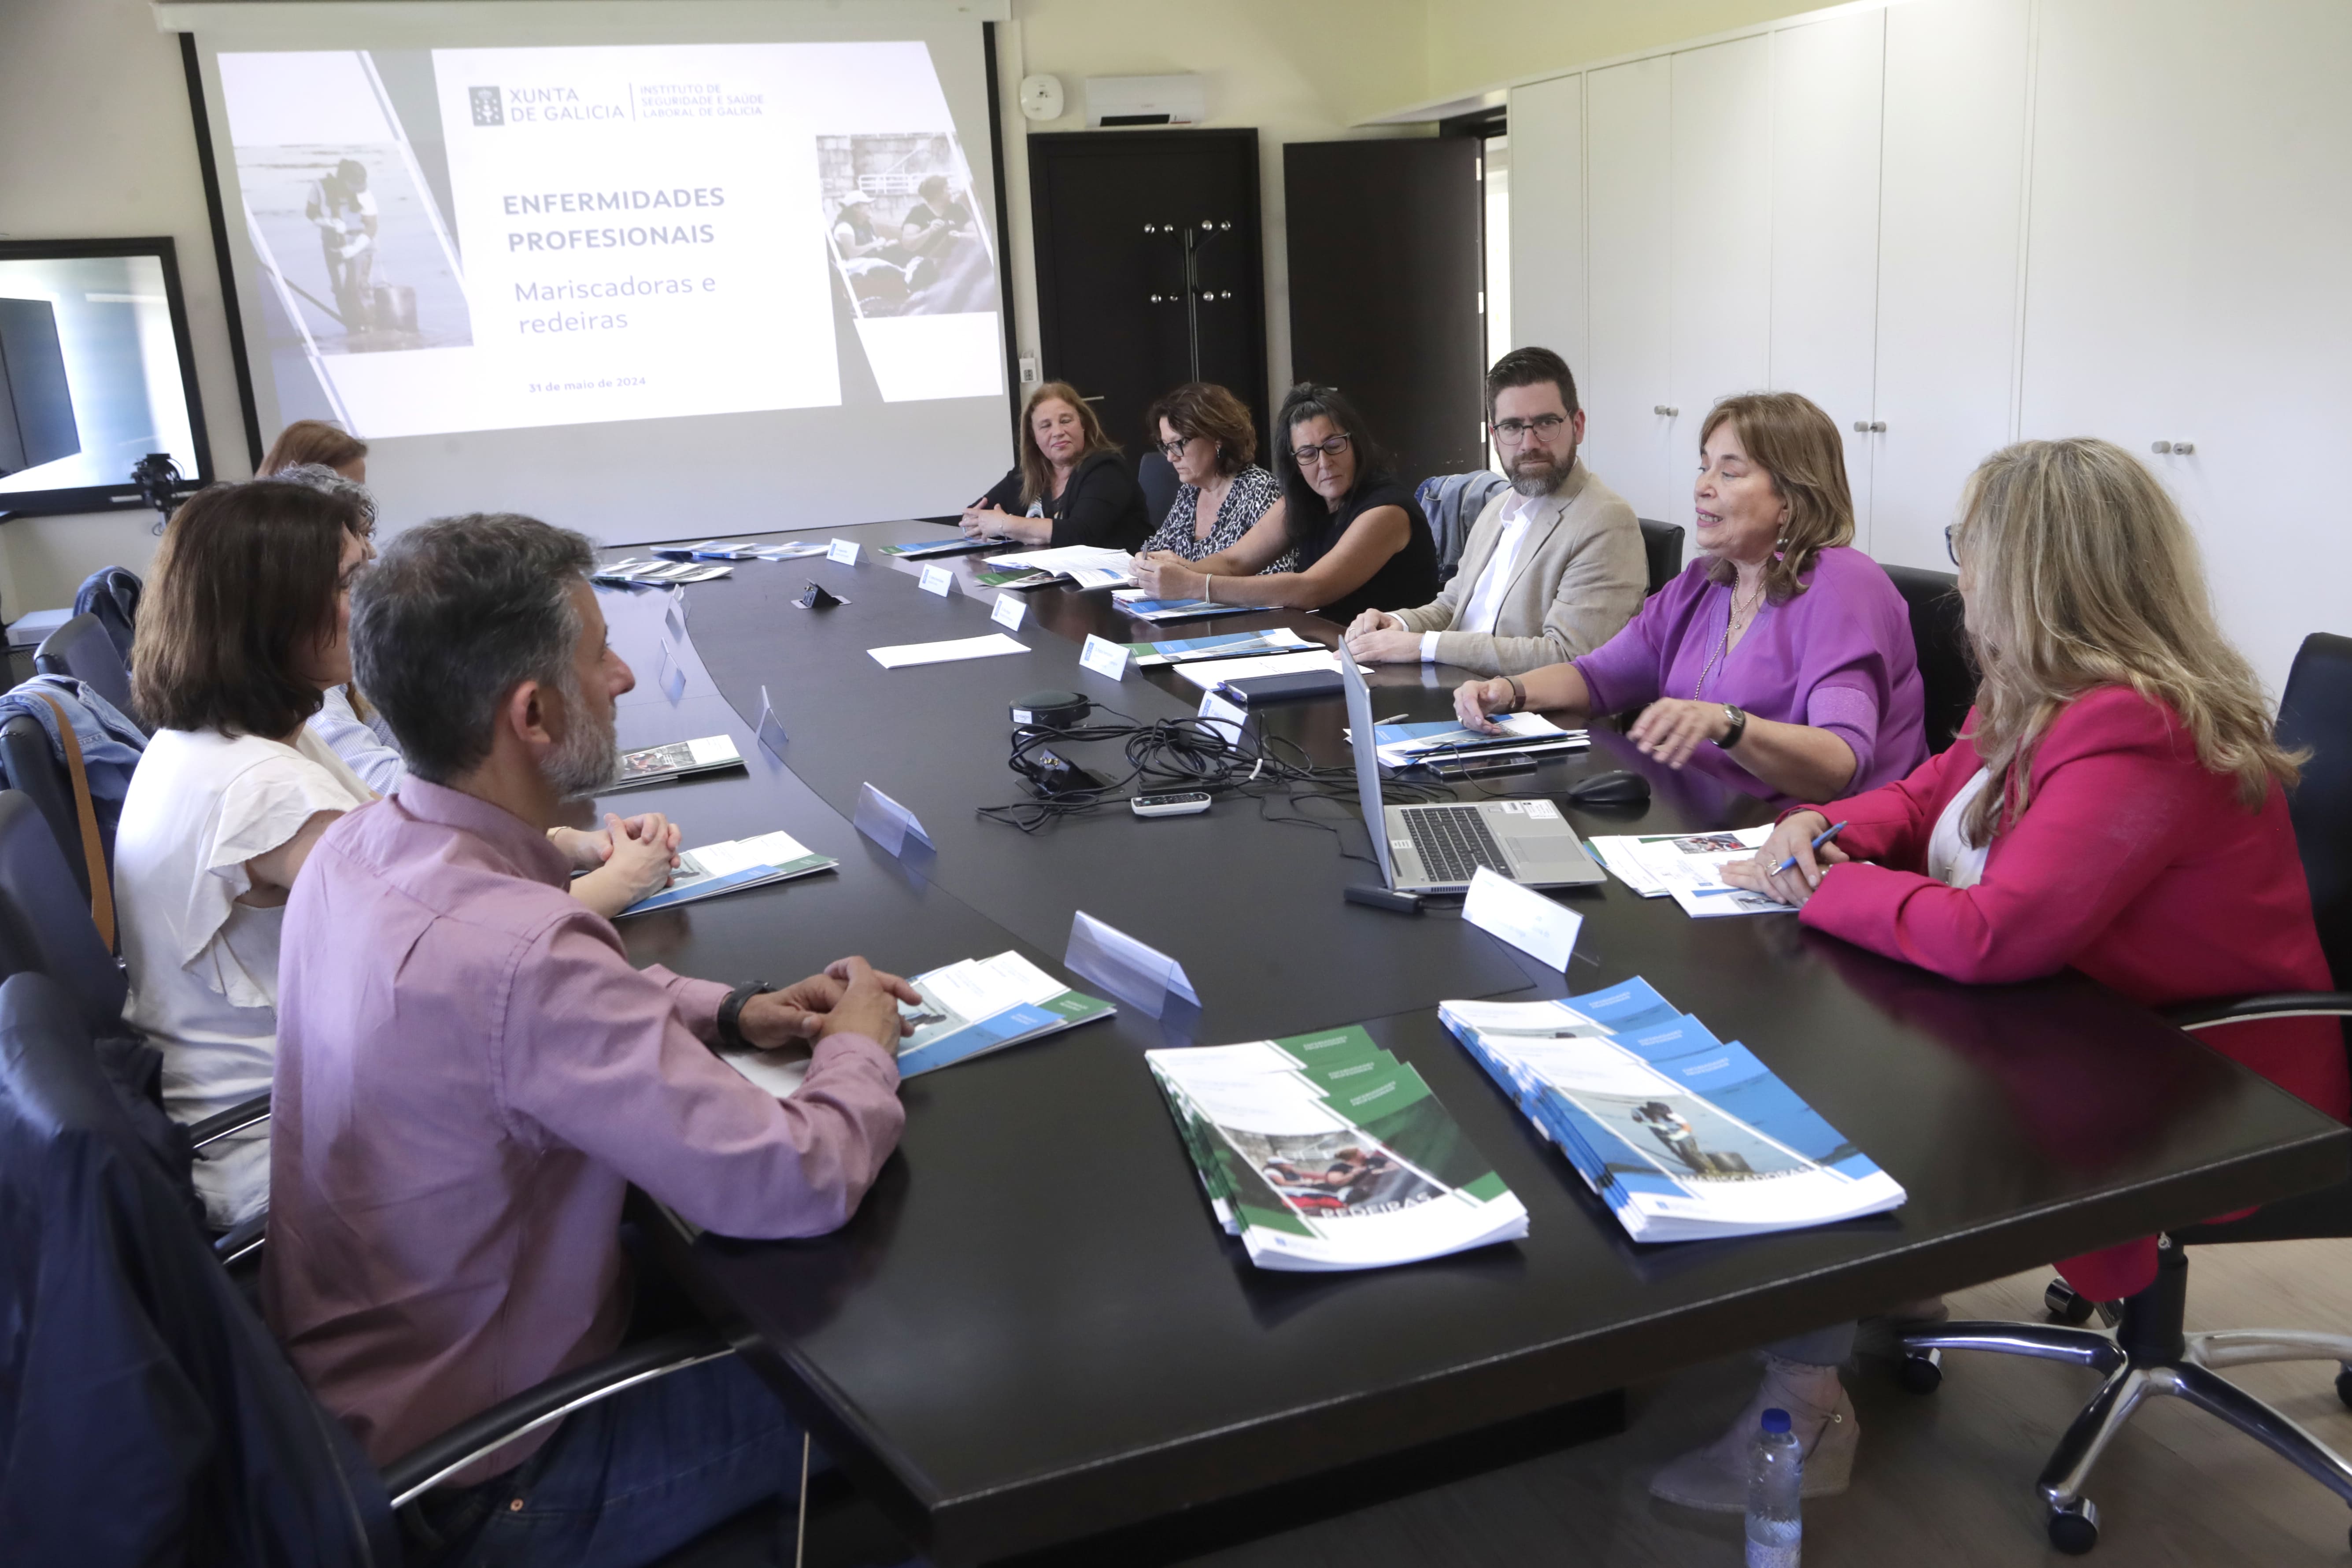 Image 0 of article A Xunta lanza unha campaña de sensibilización para mellorar a identificación das enfermidades profesionais das mariscadoras e das redeiras